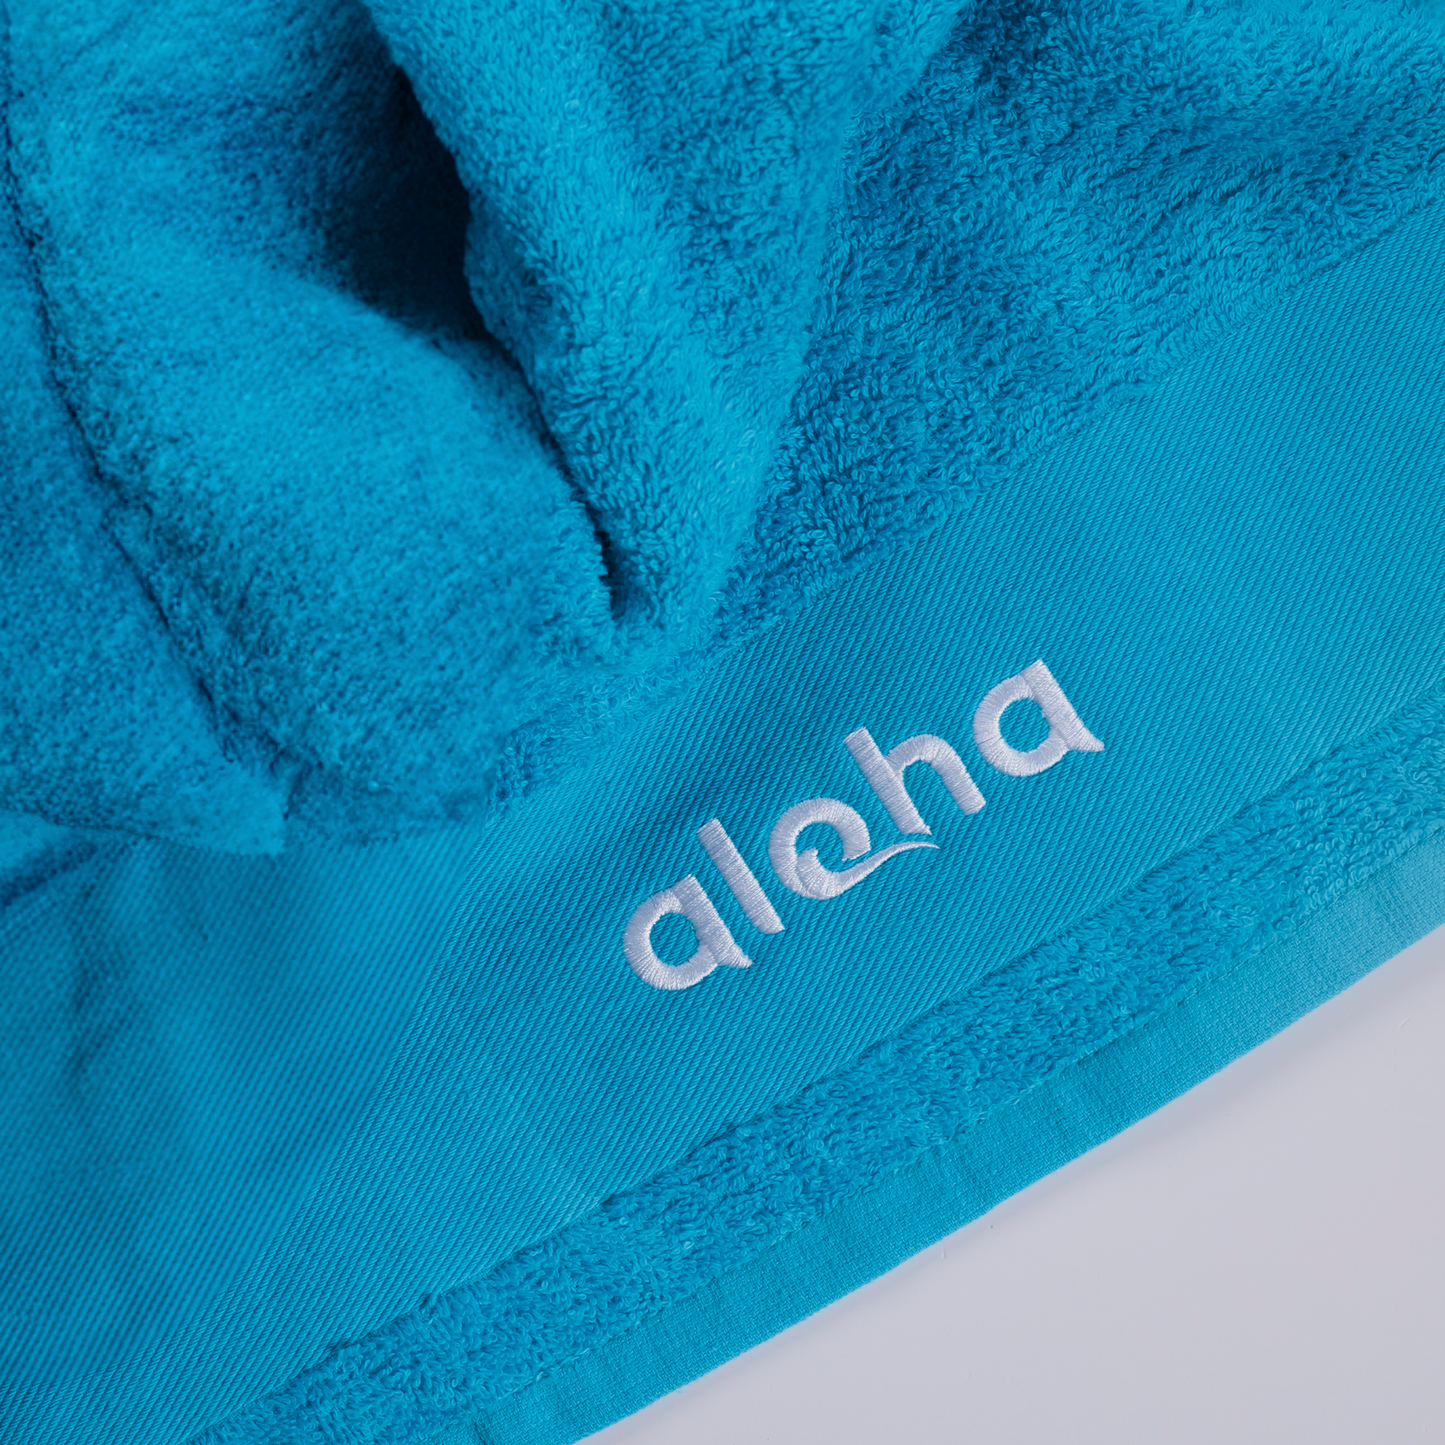 Aloha Aqua Towel